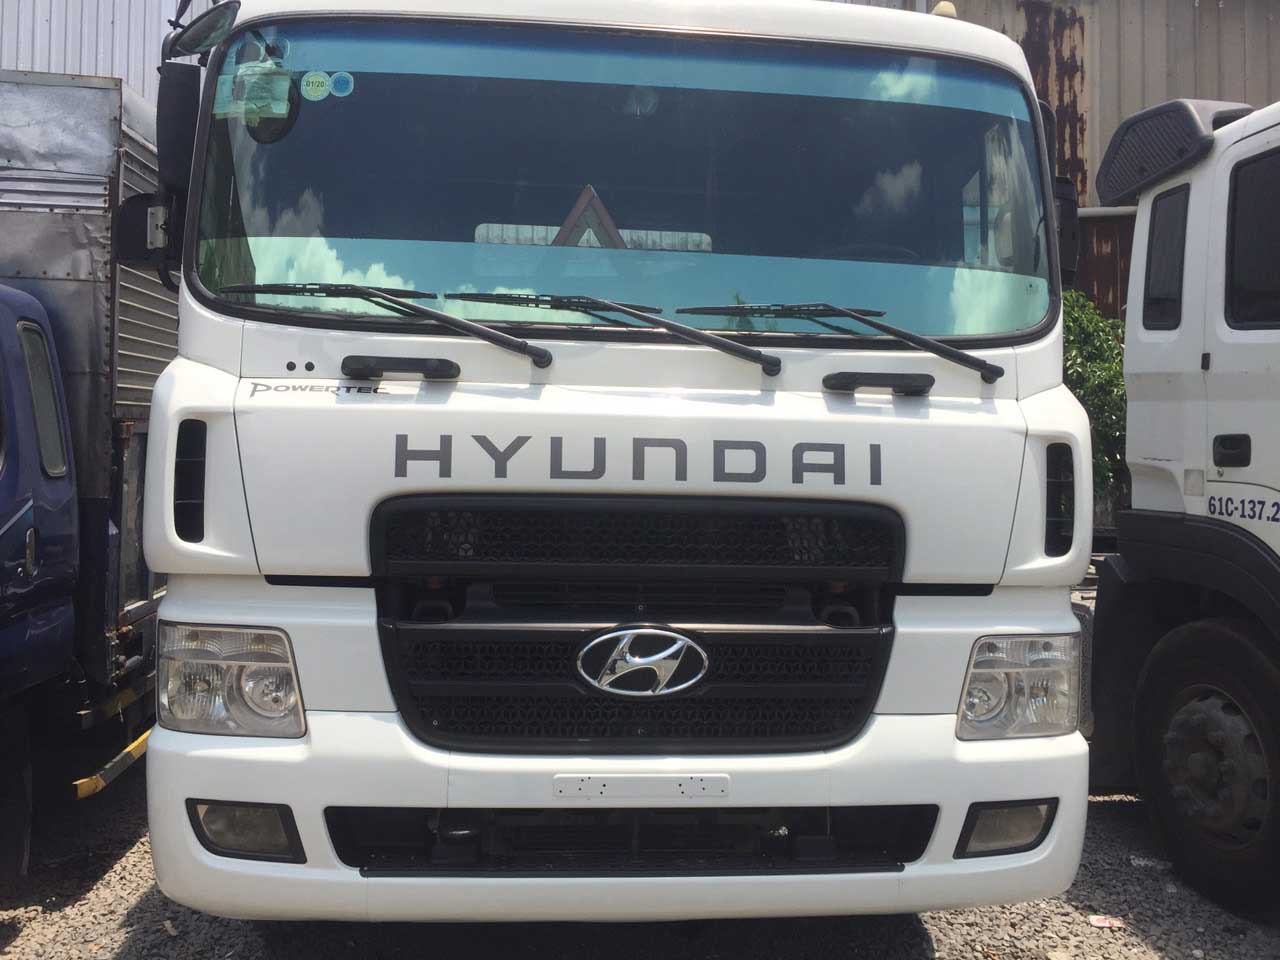 Thu mua xe ô tô Hyundai i10 cũ tại Hà Nội giá cao  Hà Nội  Ô tô   VnExpress Rao Vặt